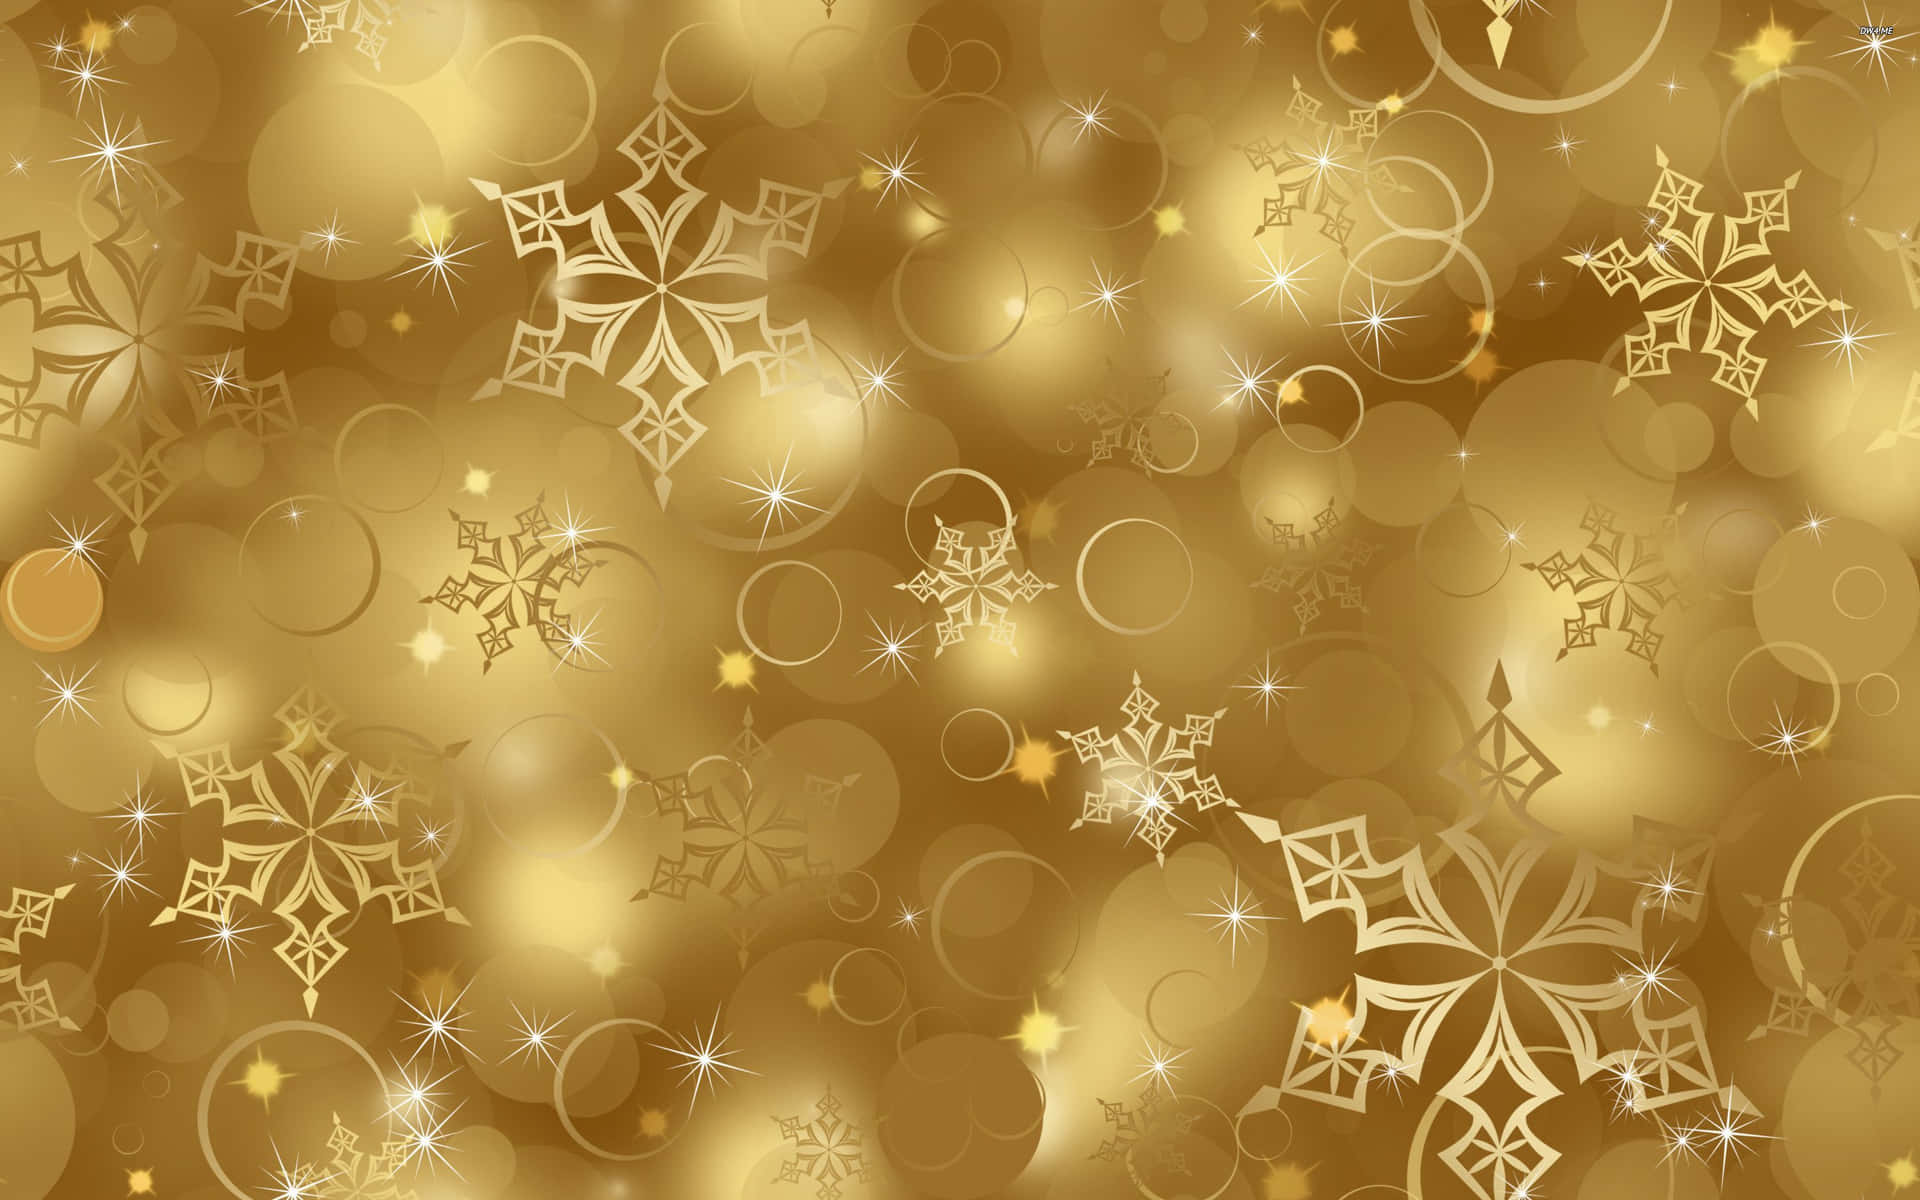 Feiernsie Weihnachten Freudig Mit Goldfarbenen Dekorationen. Wallpaper